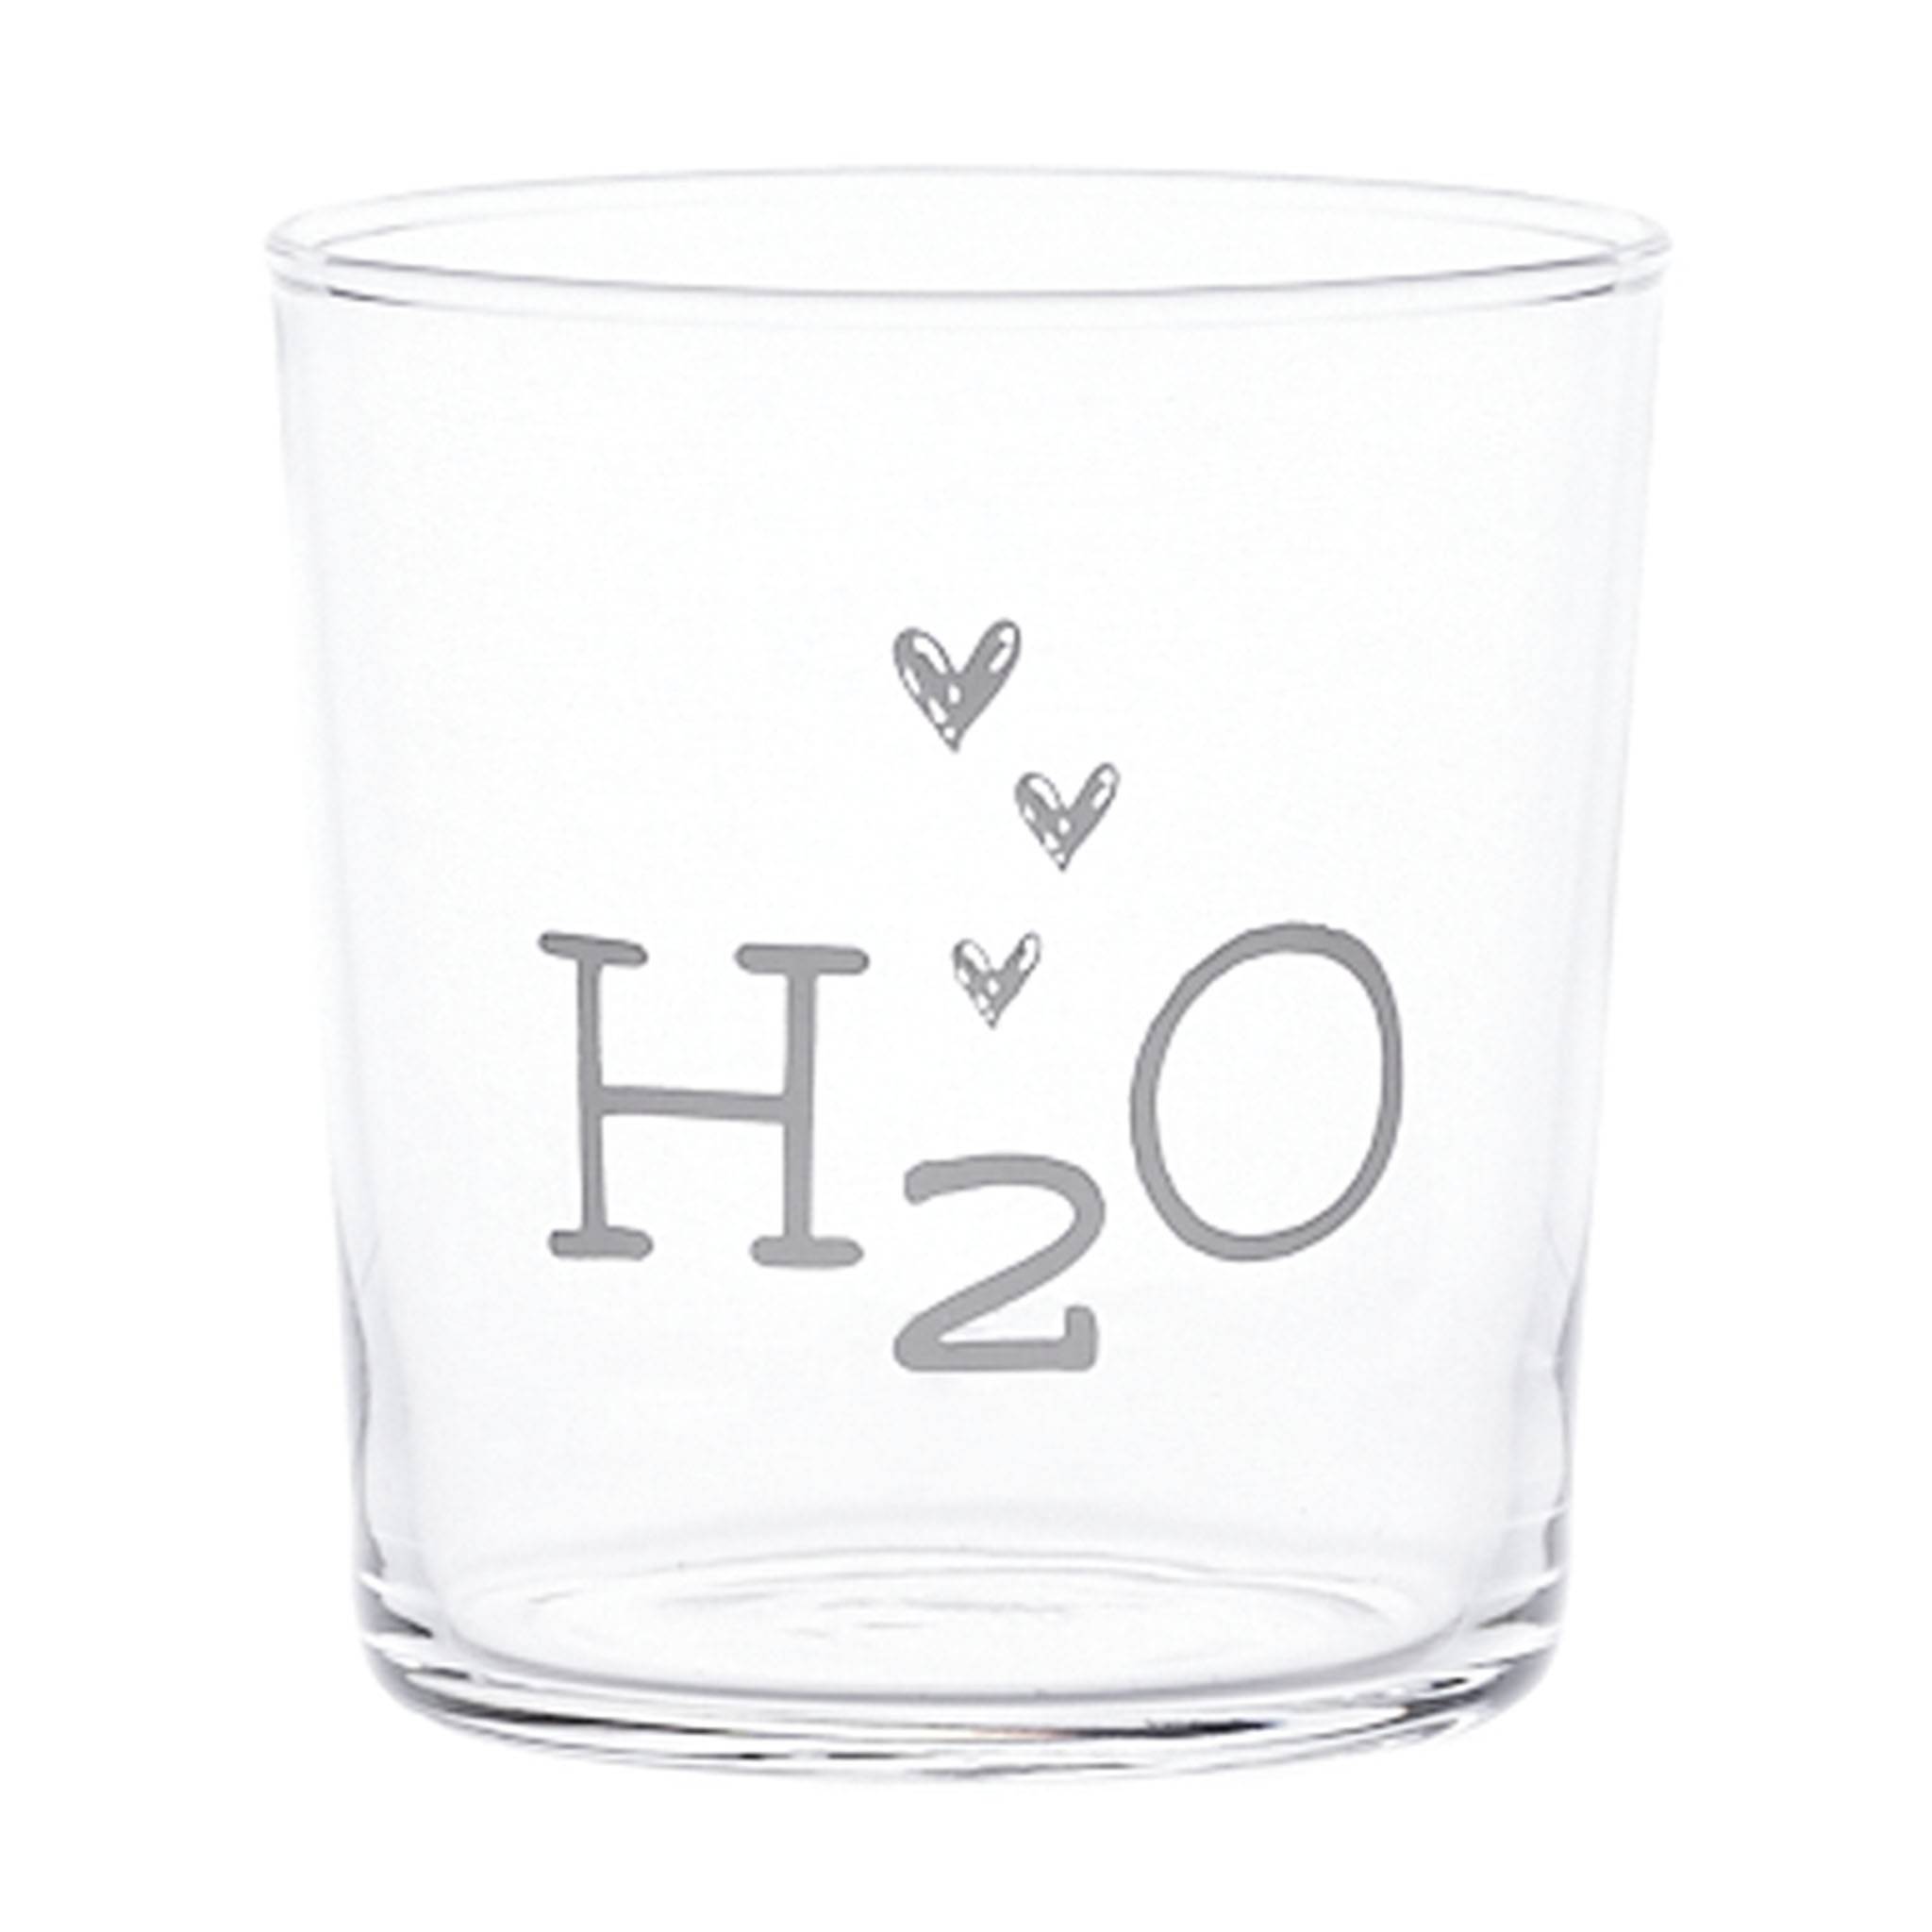 Réglez 6 verres à eau H2O